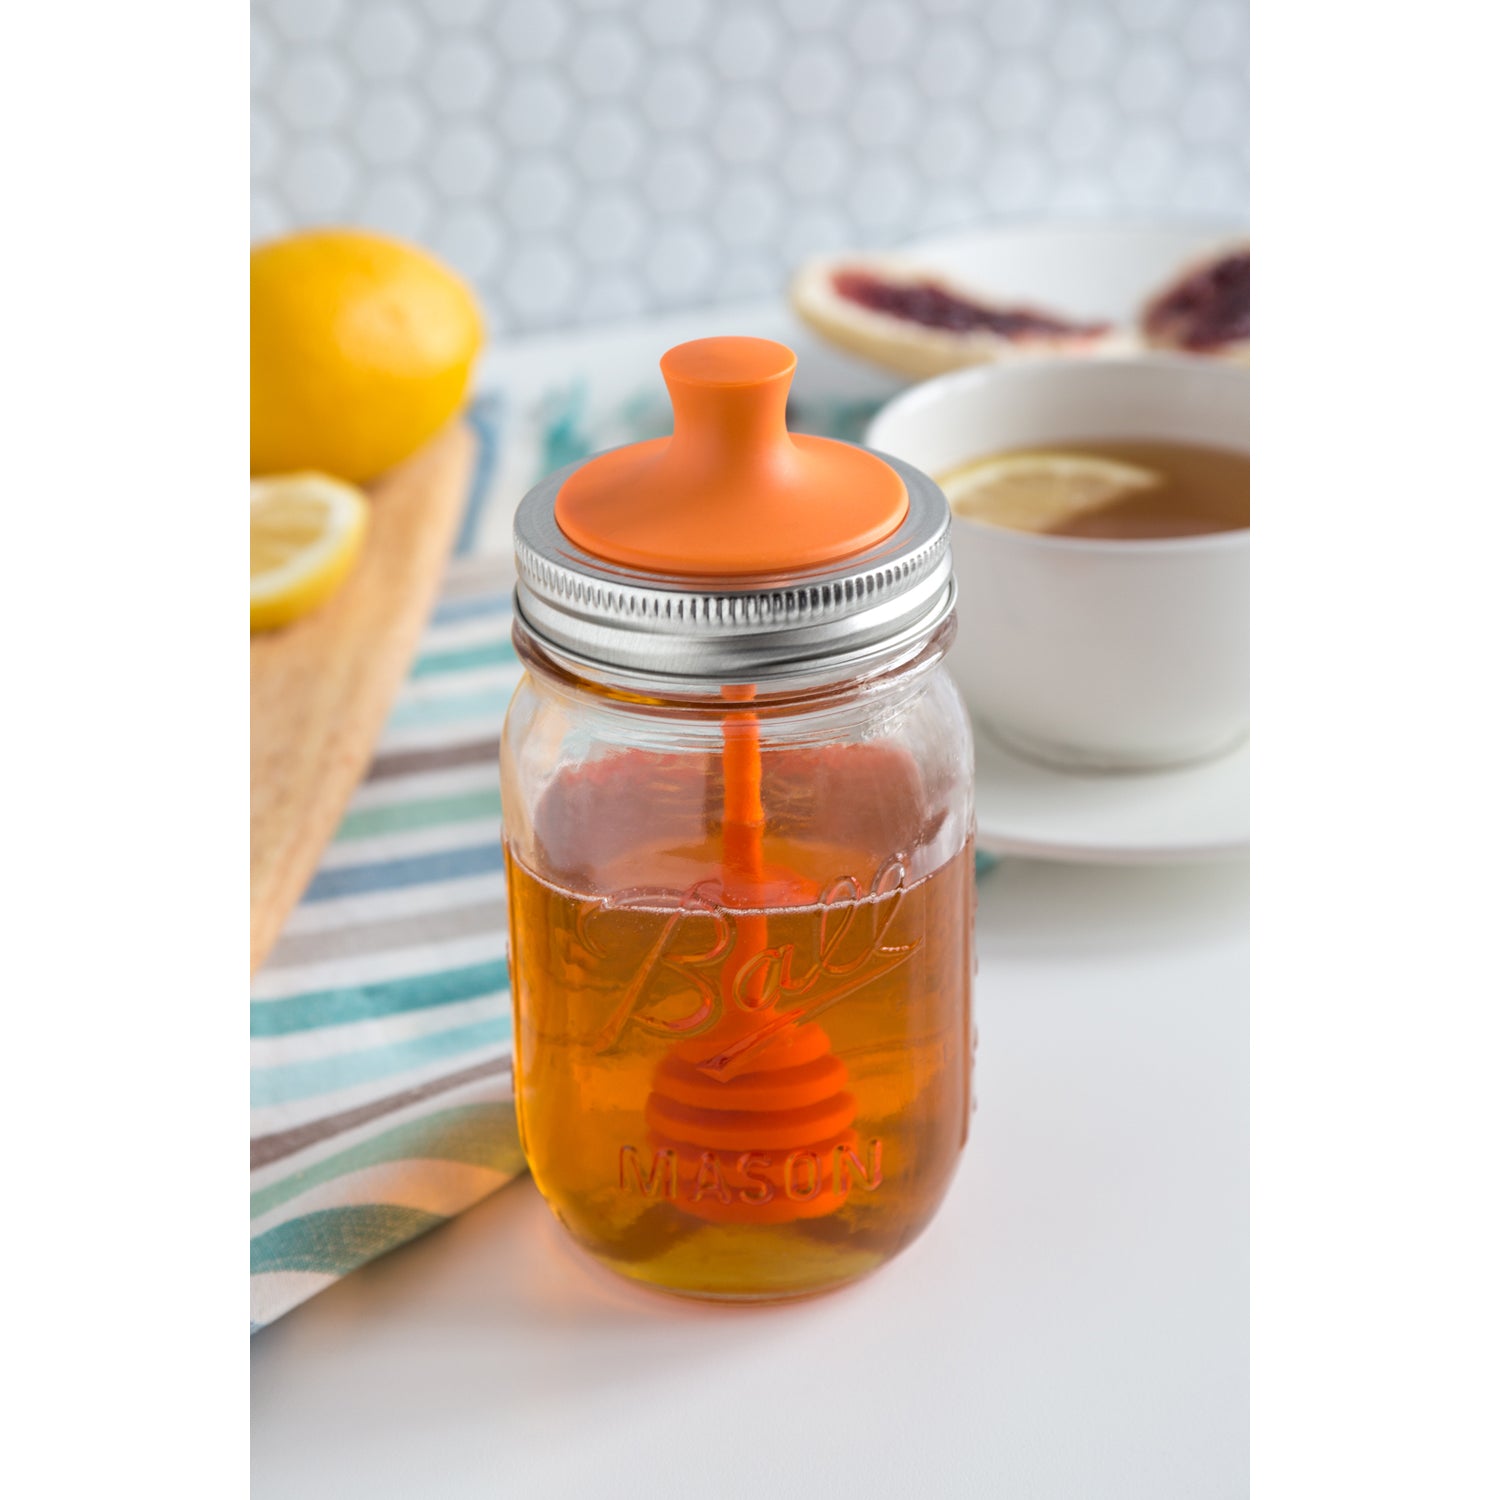 Jarware Tea Infuser for Mason Jars